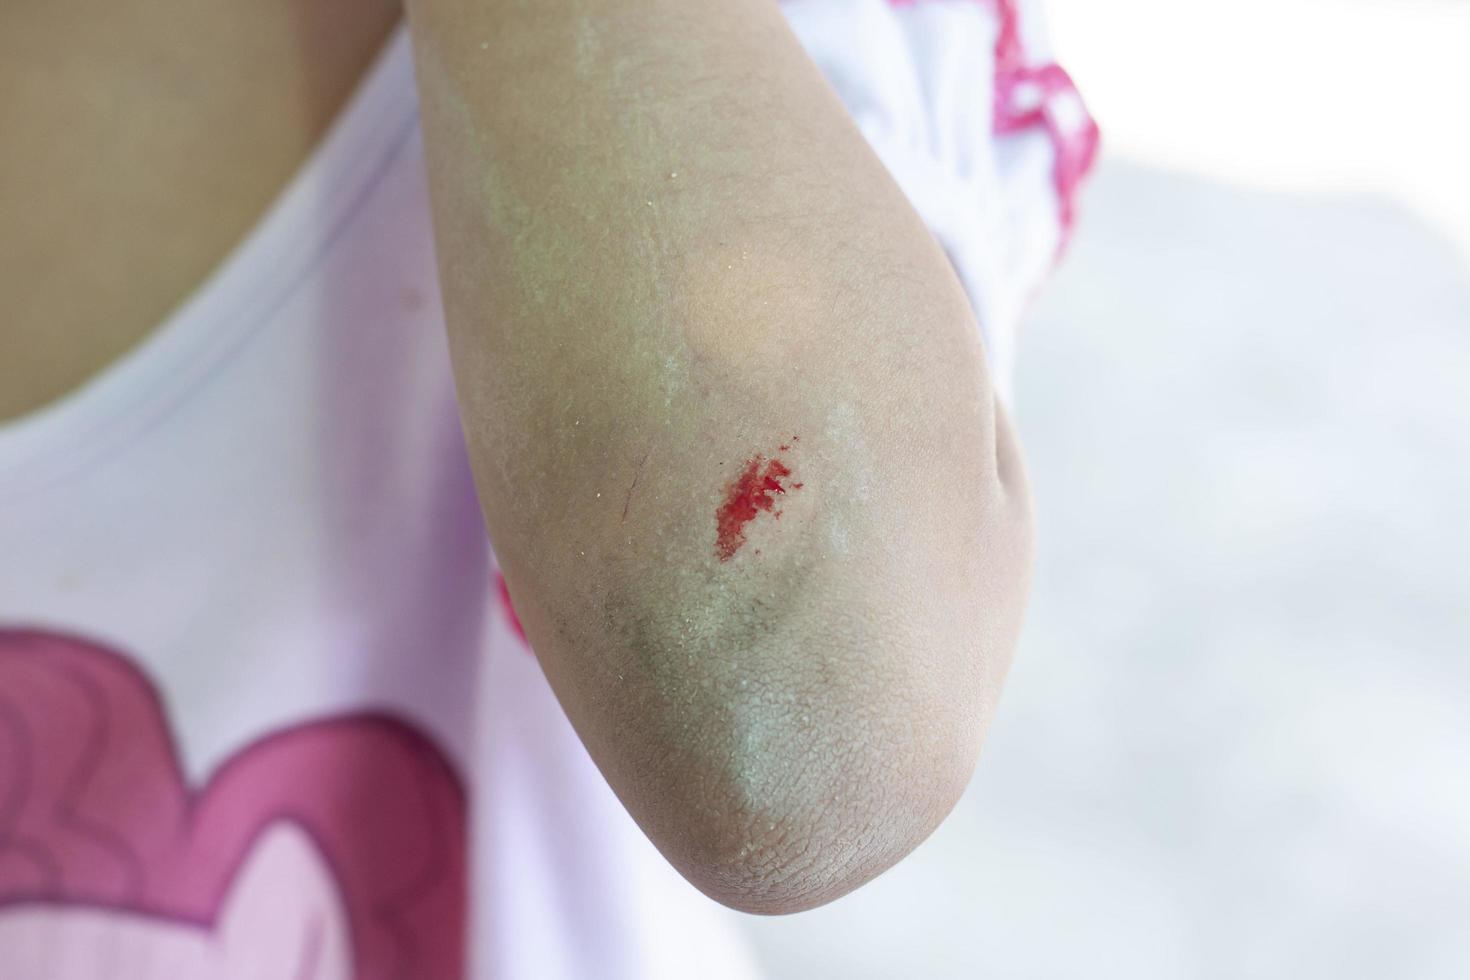 heridas en el brazo de un niño debido a un accidente al jugar. foto